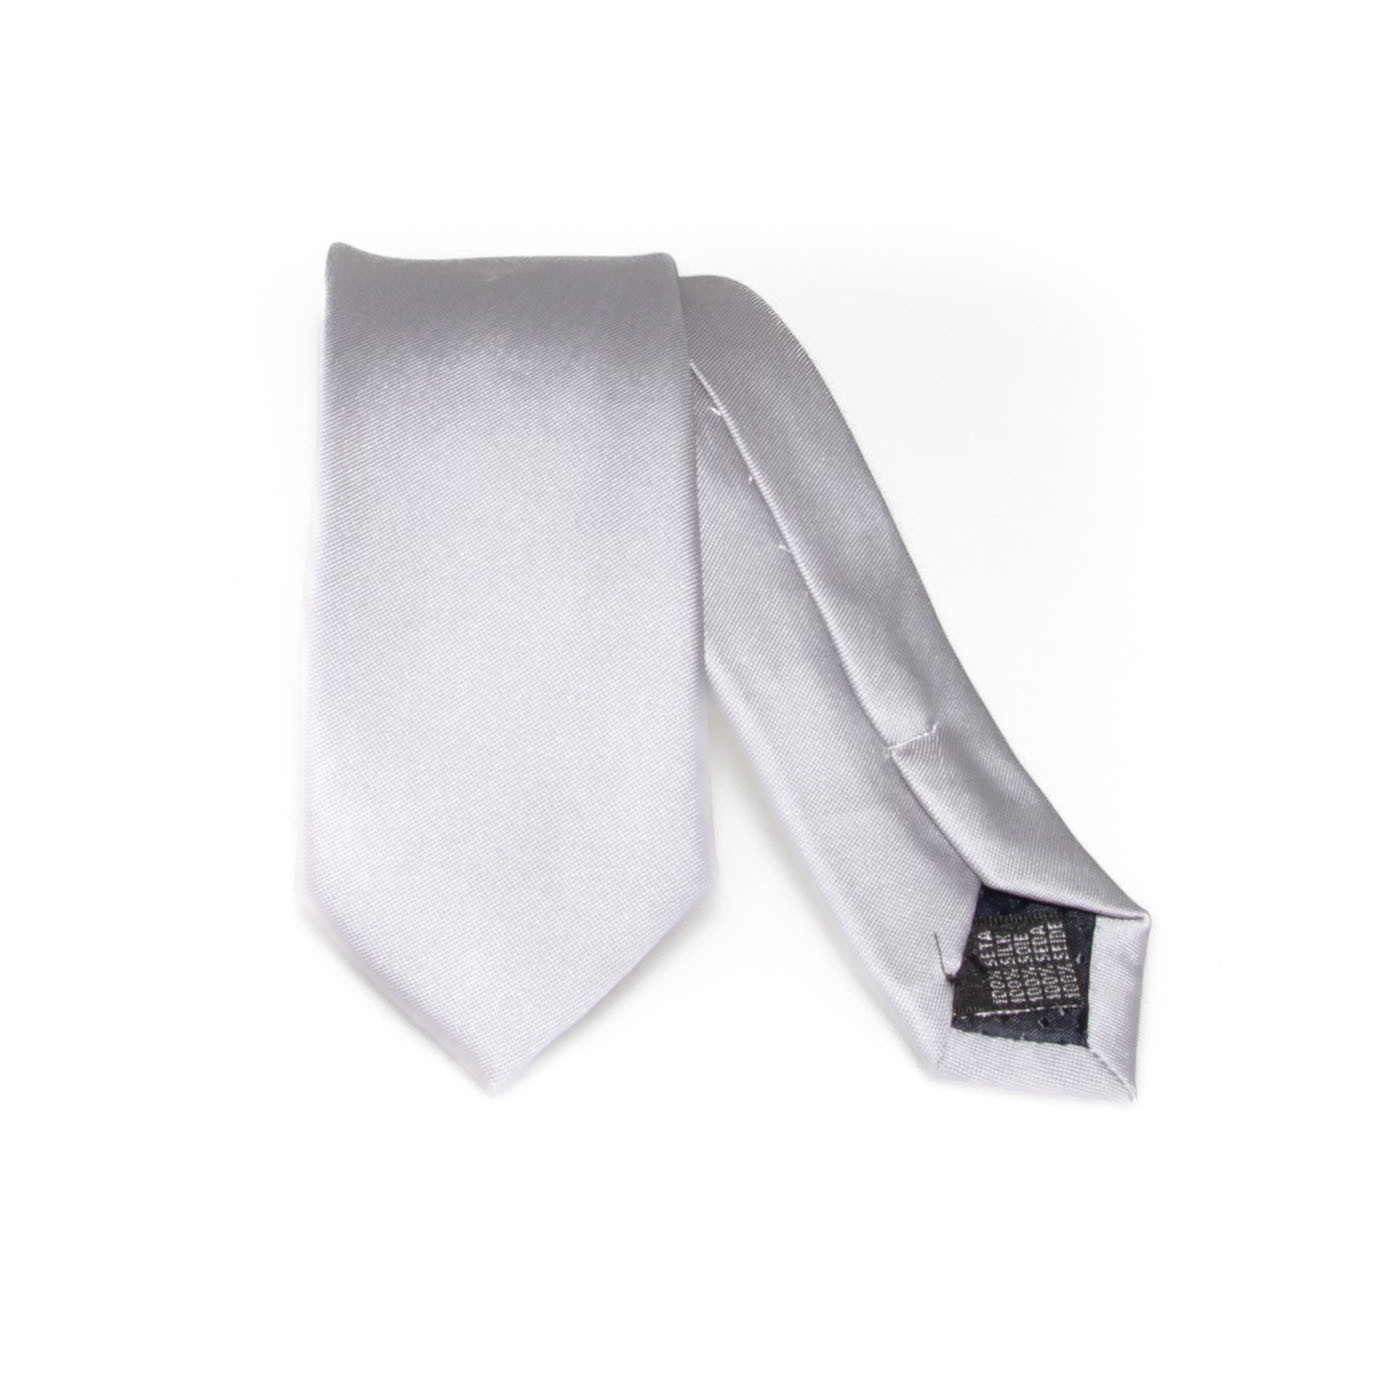 Cravate gris clair (cravate)